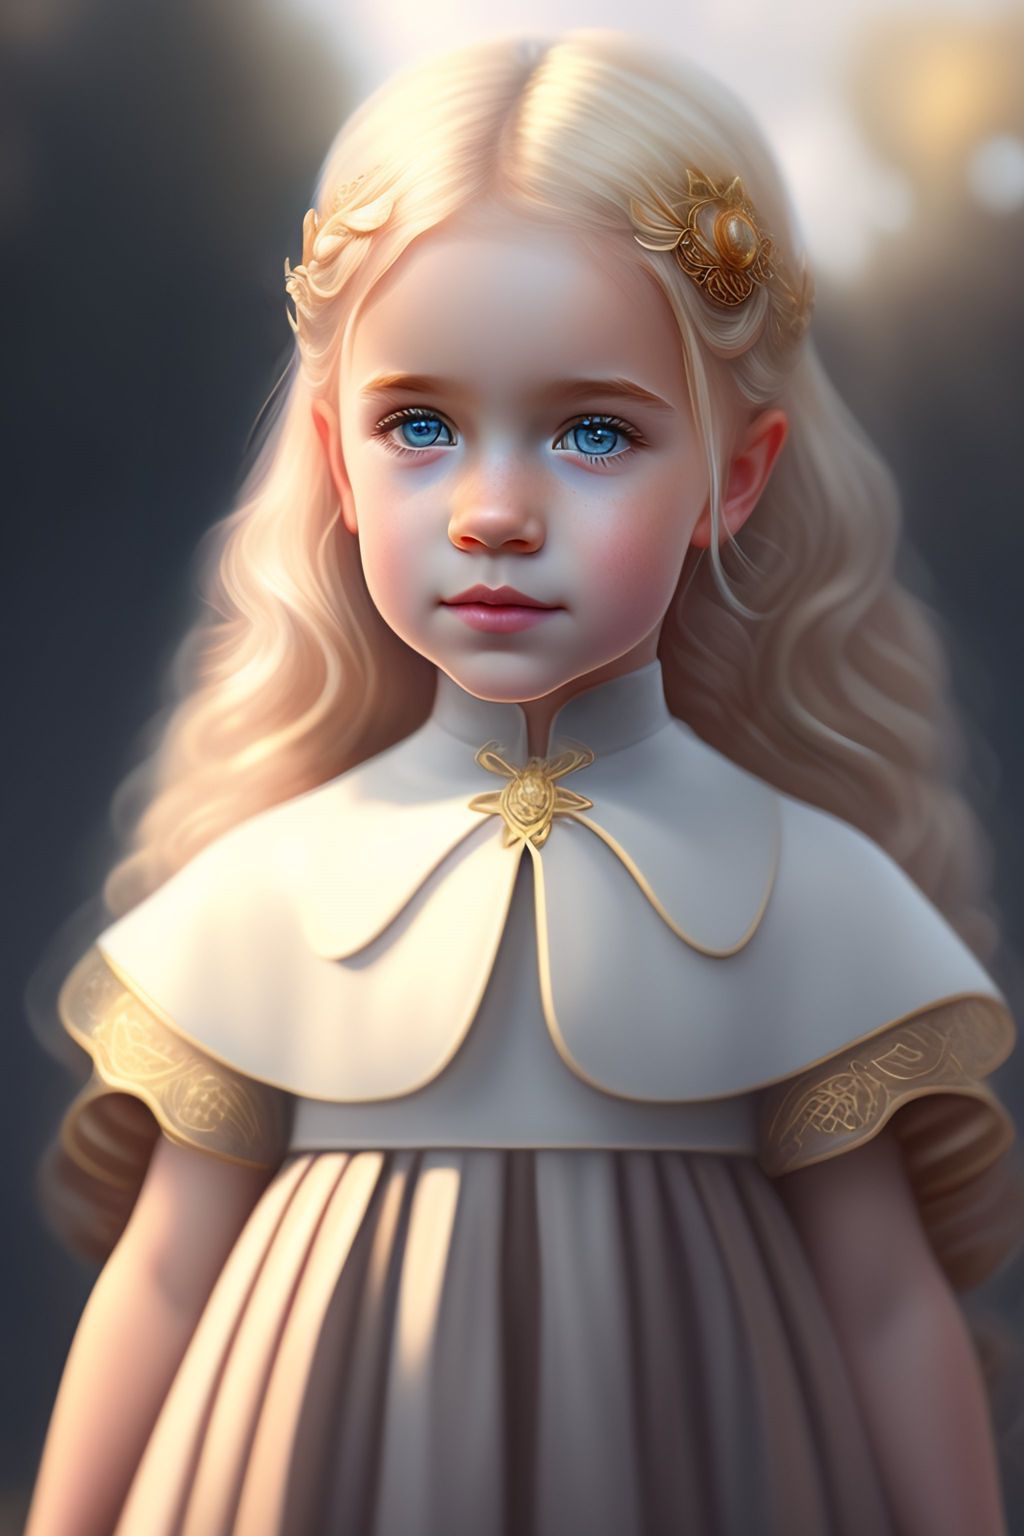 Девочки с короткими, светлыми локонами и золотыми украшениями, похожие на маленьких принцесс.